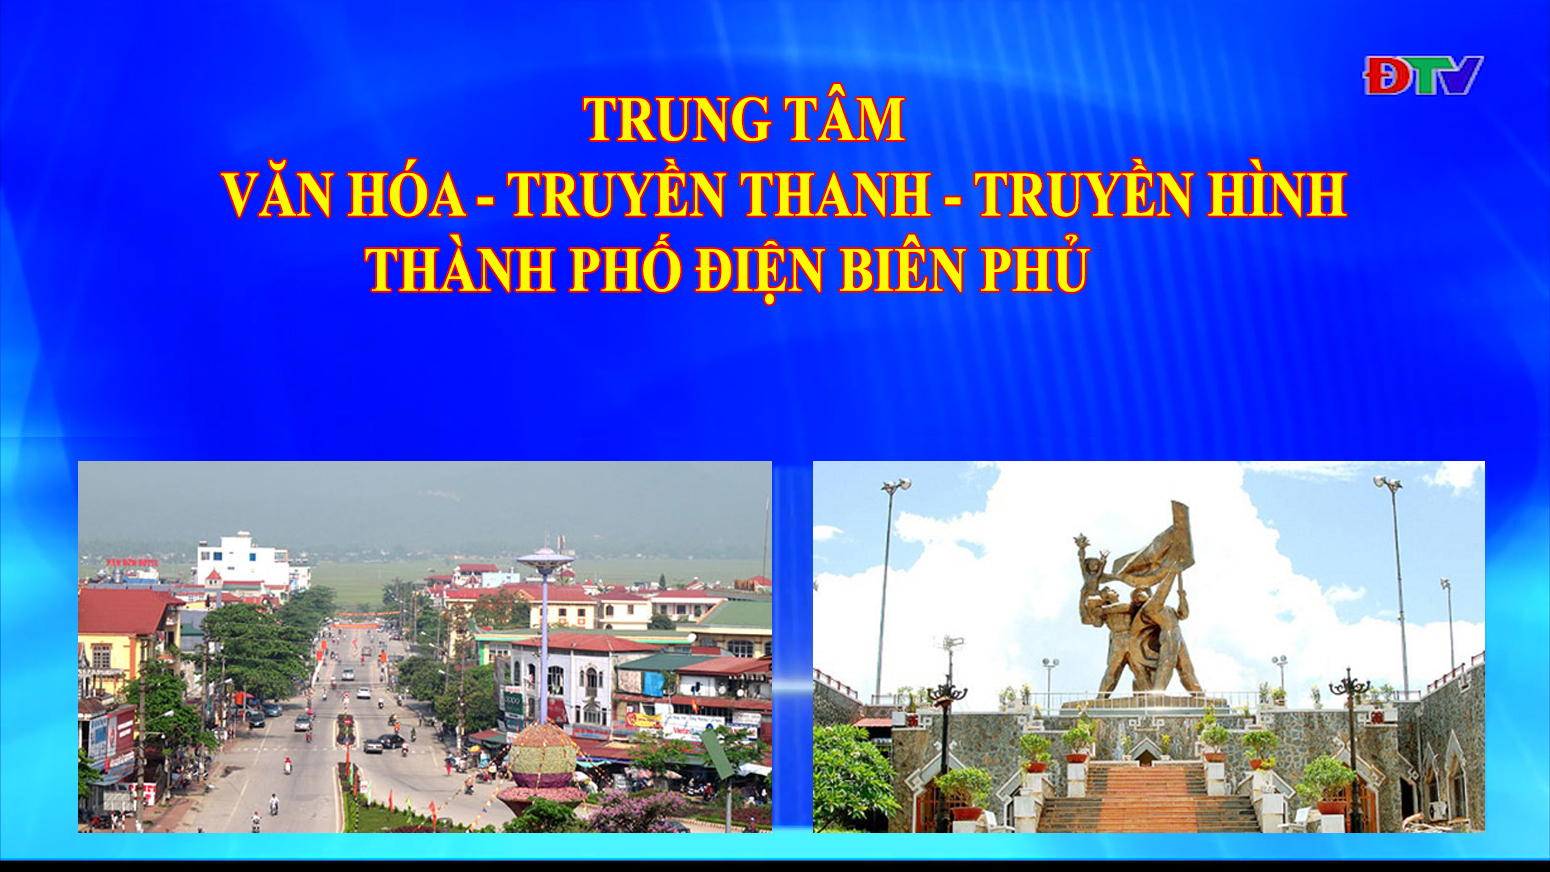 Trung tâm VH-TTTH thành phố Điện Biên Phủ (Ngày 6-7-2021)